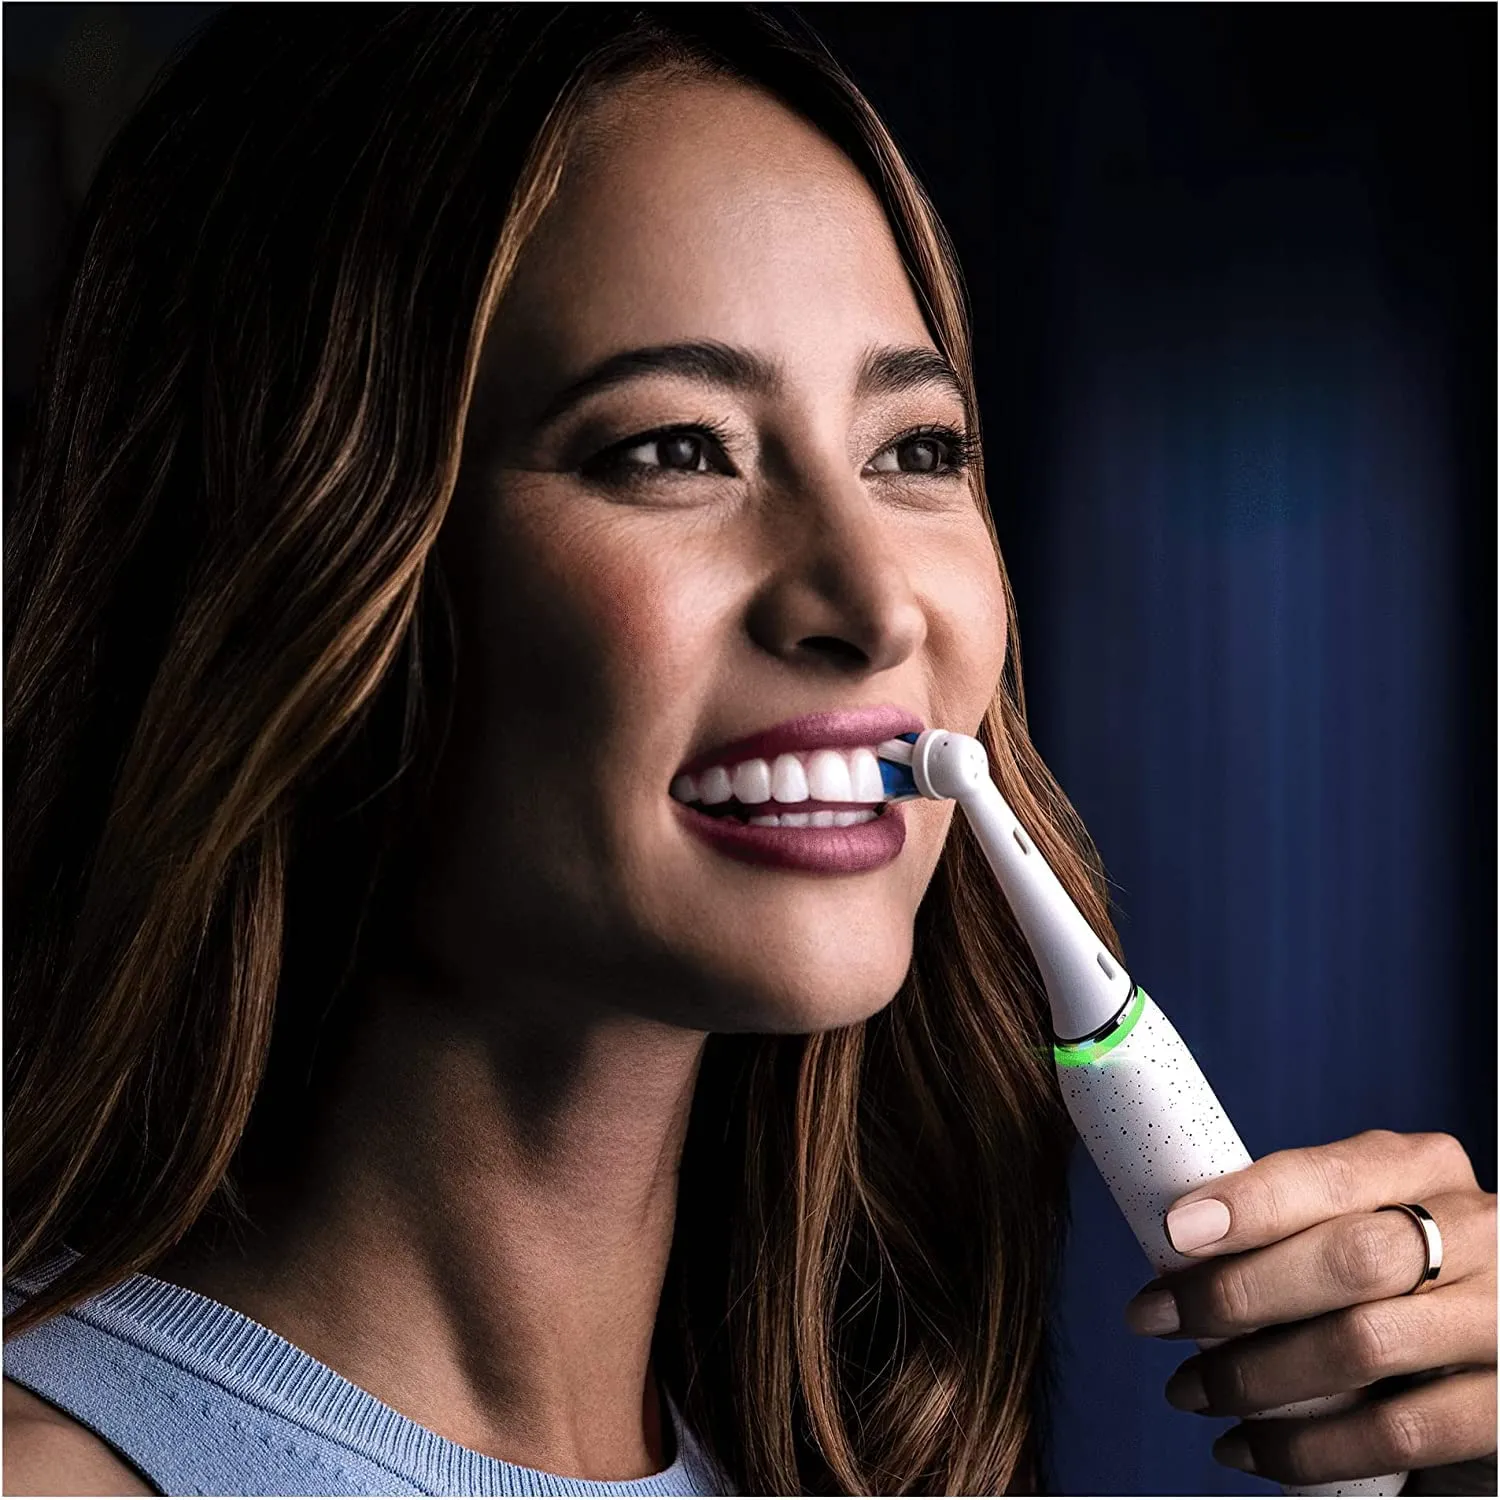 Oral-b spazzolino elettrico ricaricabile io 10 bianco,1 testina, 1